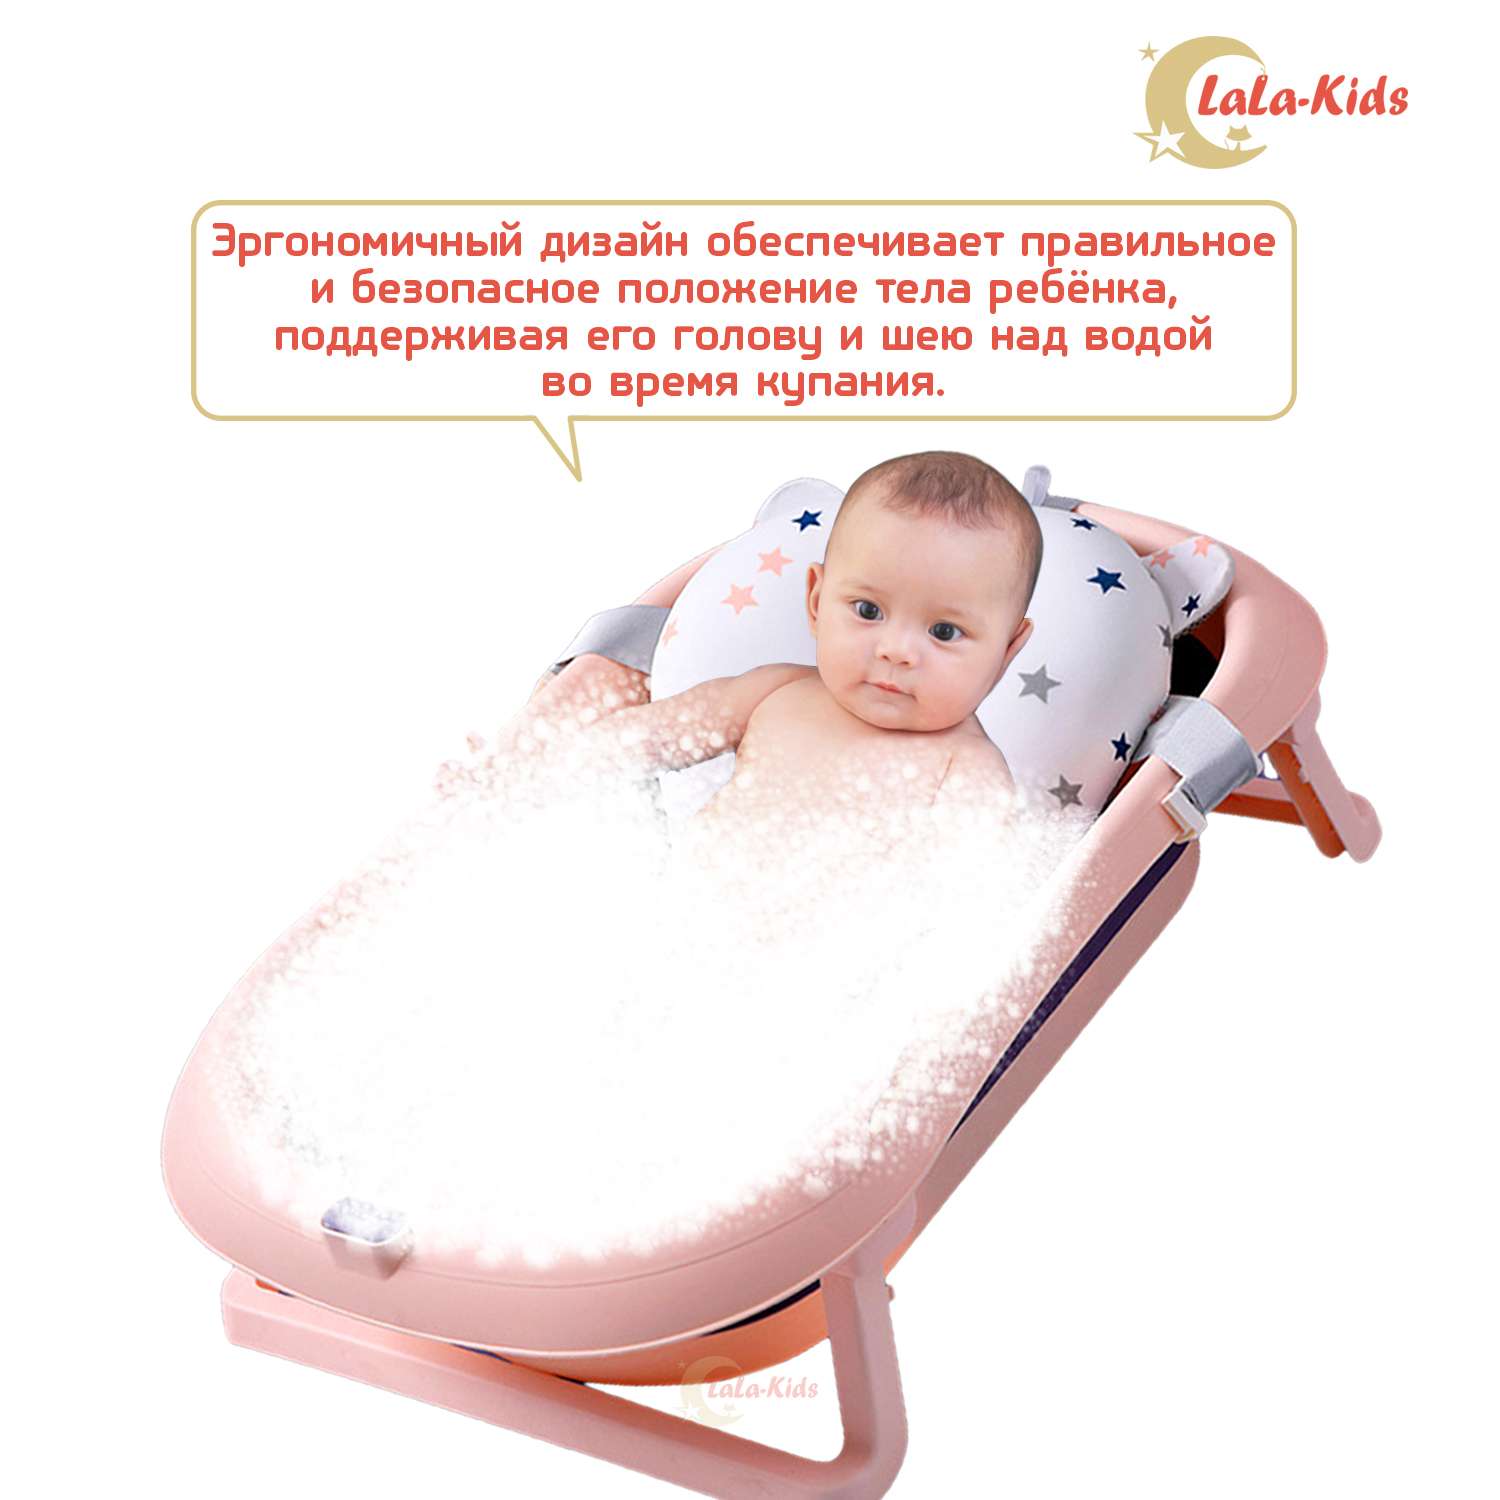 Детская ванночка LaLa-Kids складная с матрасиком для купания новорожденных - фото 8